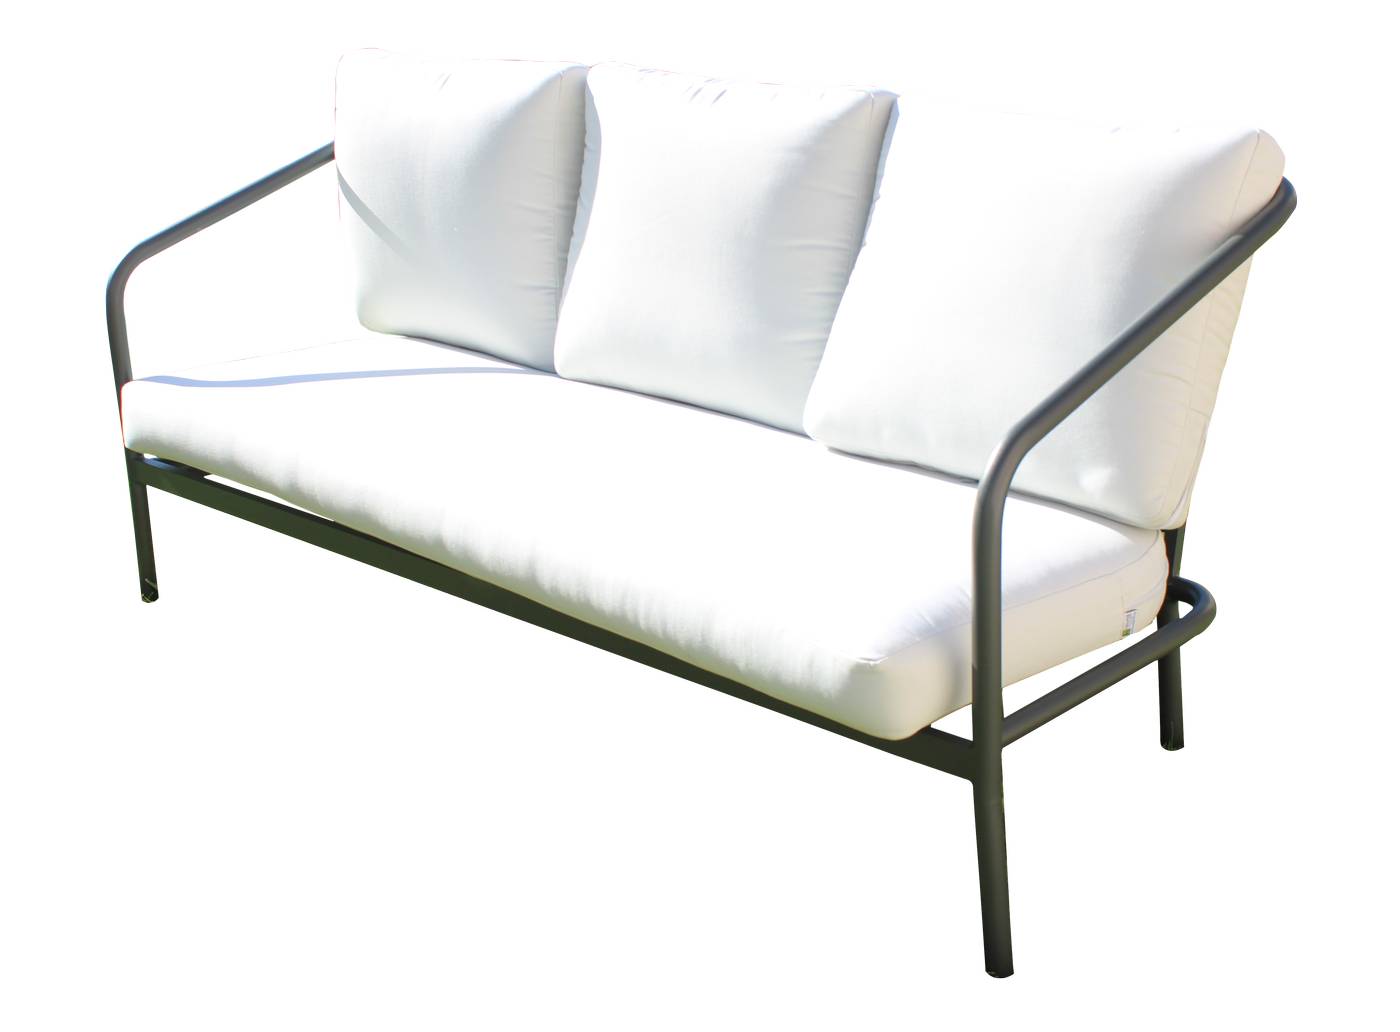 Set Aluminio Alexis-8 - Conjunto: 1 sofá 3 plazas + 2 sillones + 1 mesa de centro. Estructura aluminio color blanco o antracita.